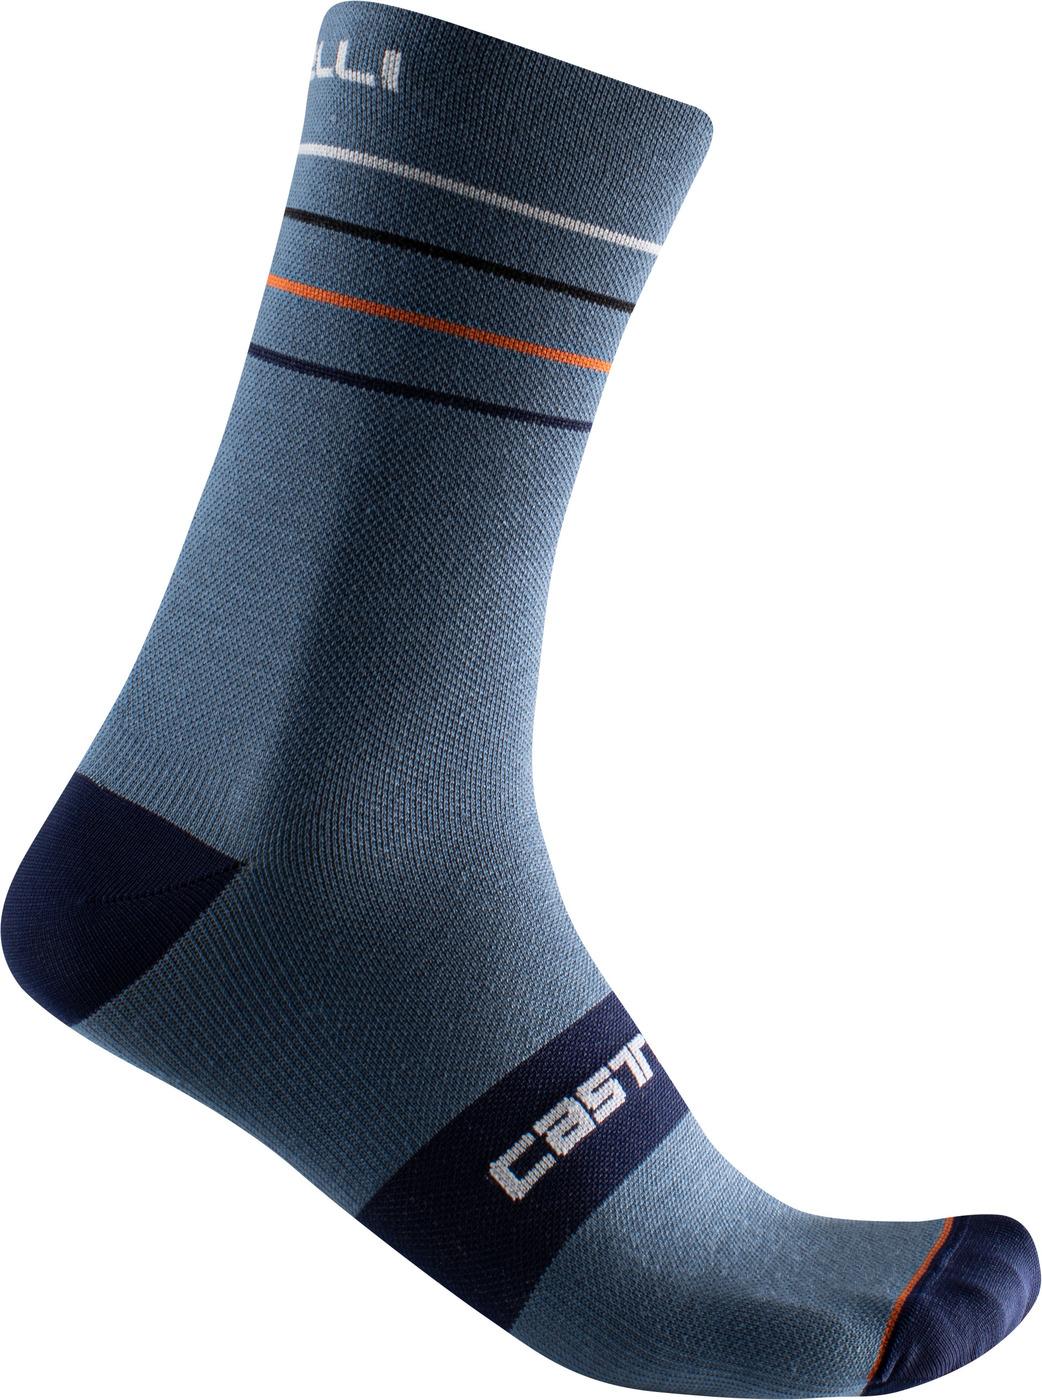 Castelli Endurance 15 Sock - Light Steel Blue/pop Orange/white